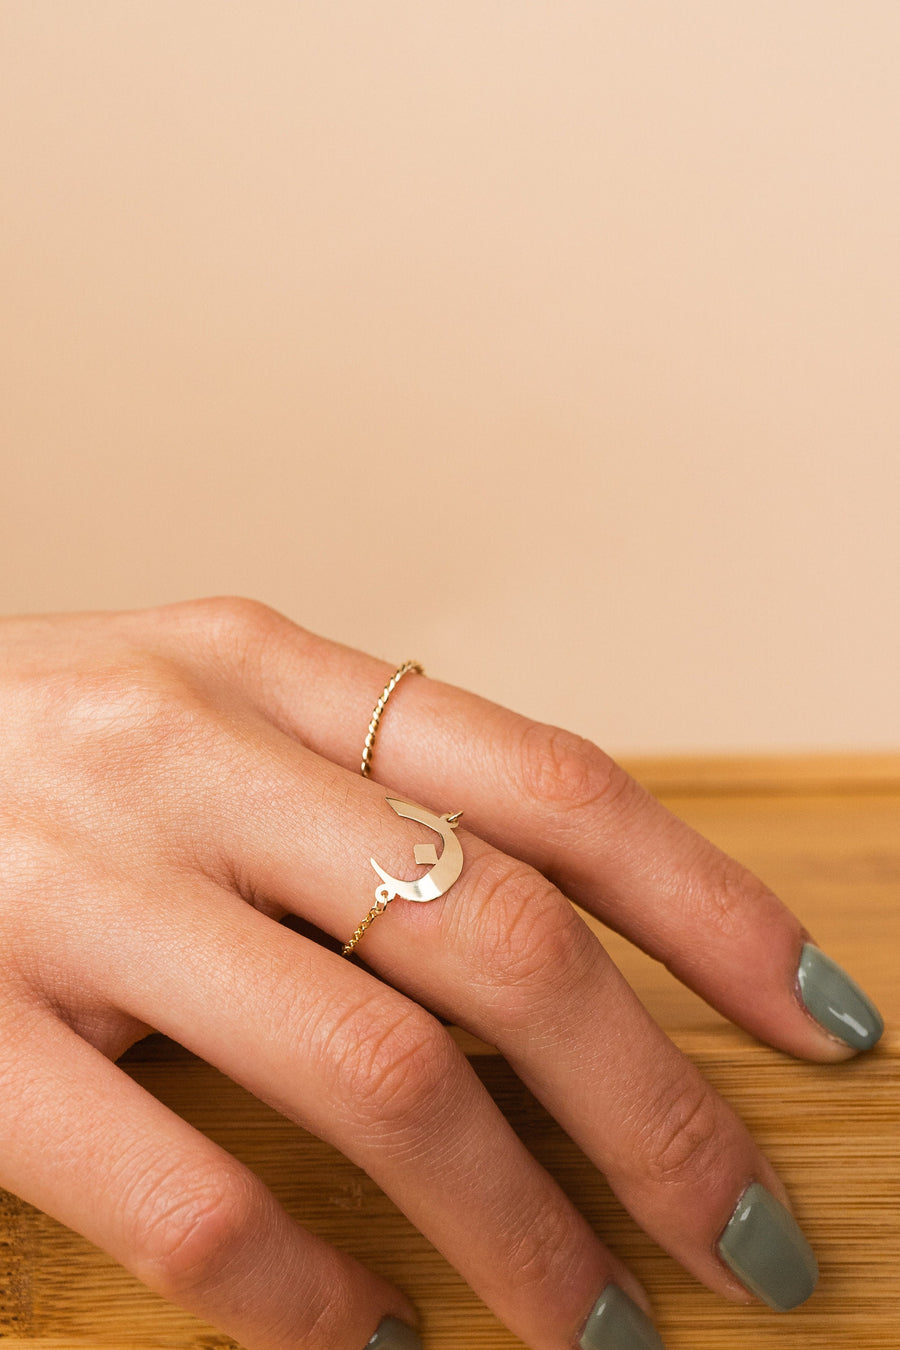 Latest Designs Fashion Finger Ring Designs| Alibaba.com